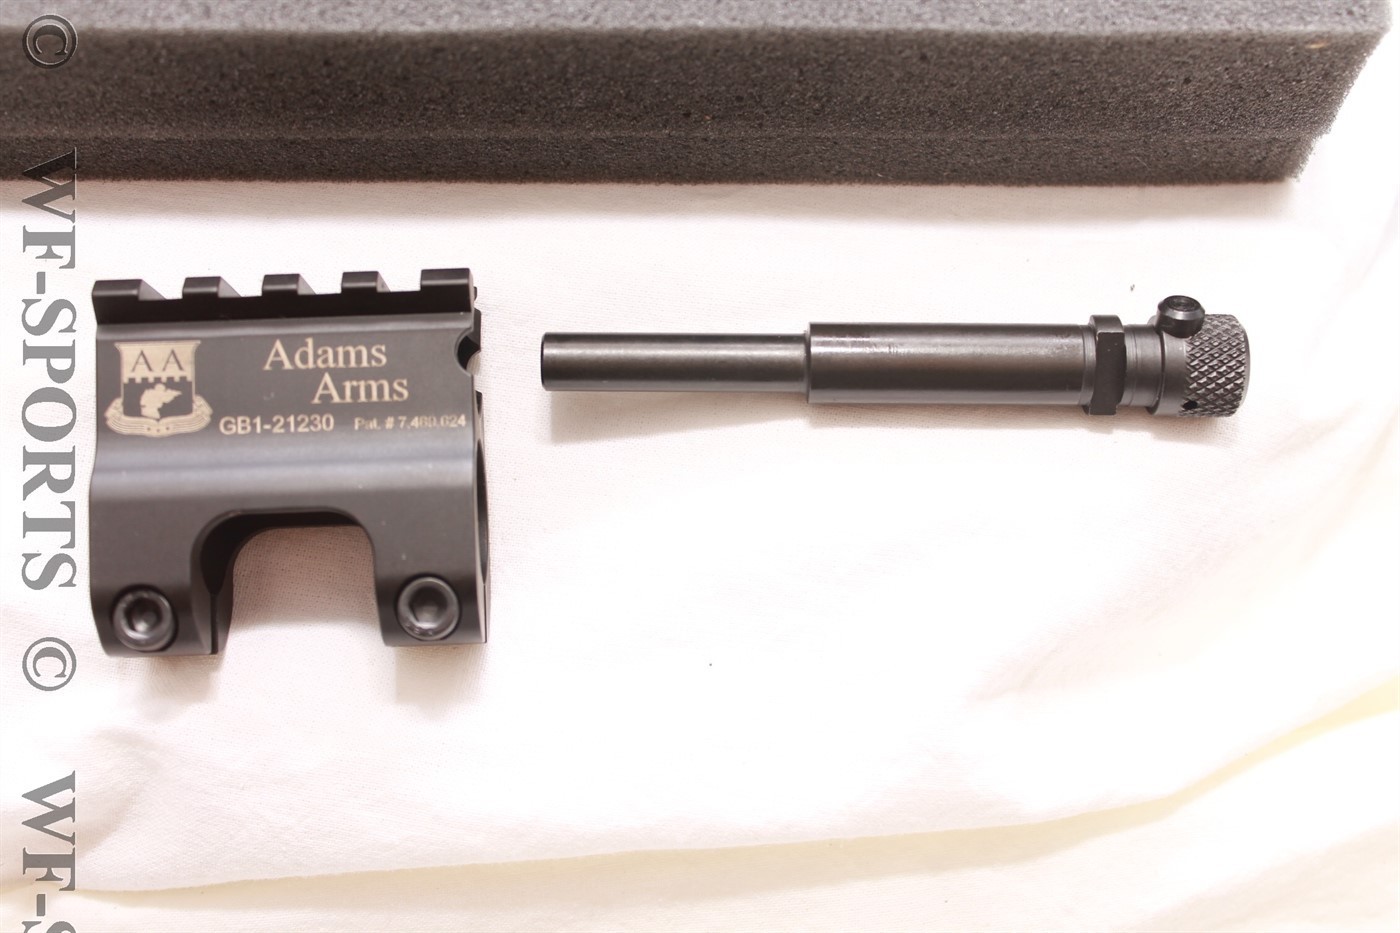 Adams arms - AR-15 gas piston conversion kit.